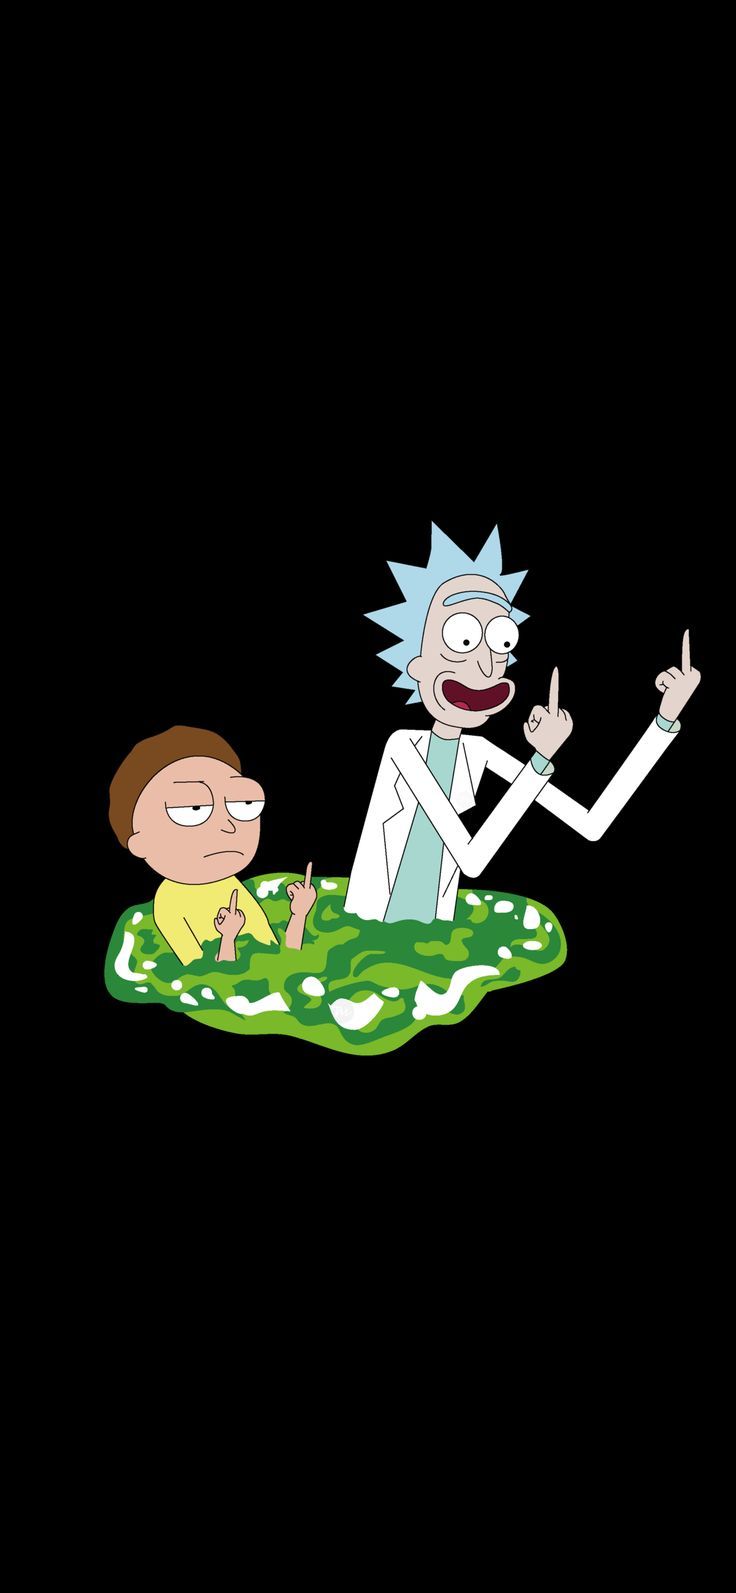 27+] Cute Rick and Morty Wallpapers - WallpaperSafari